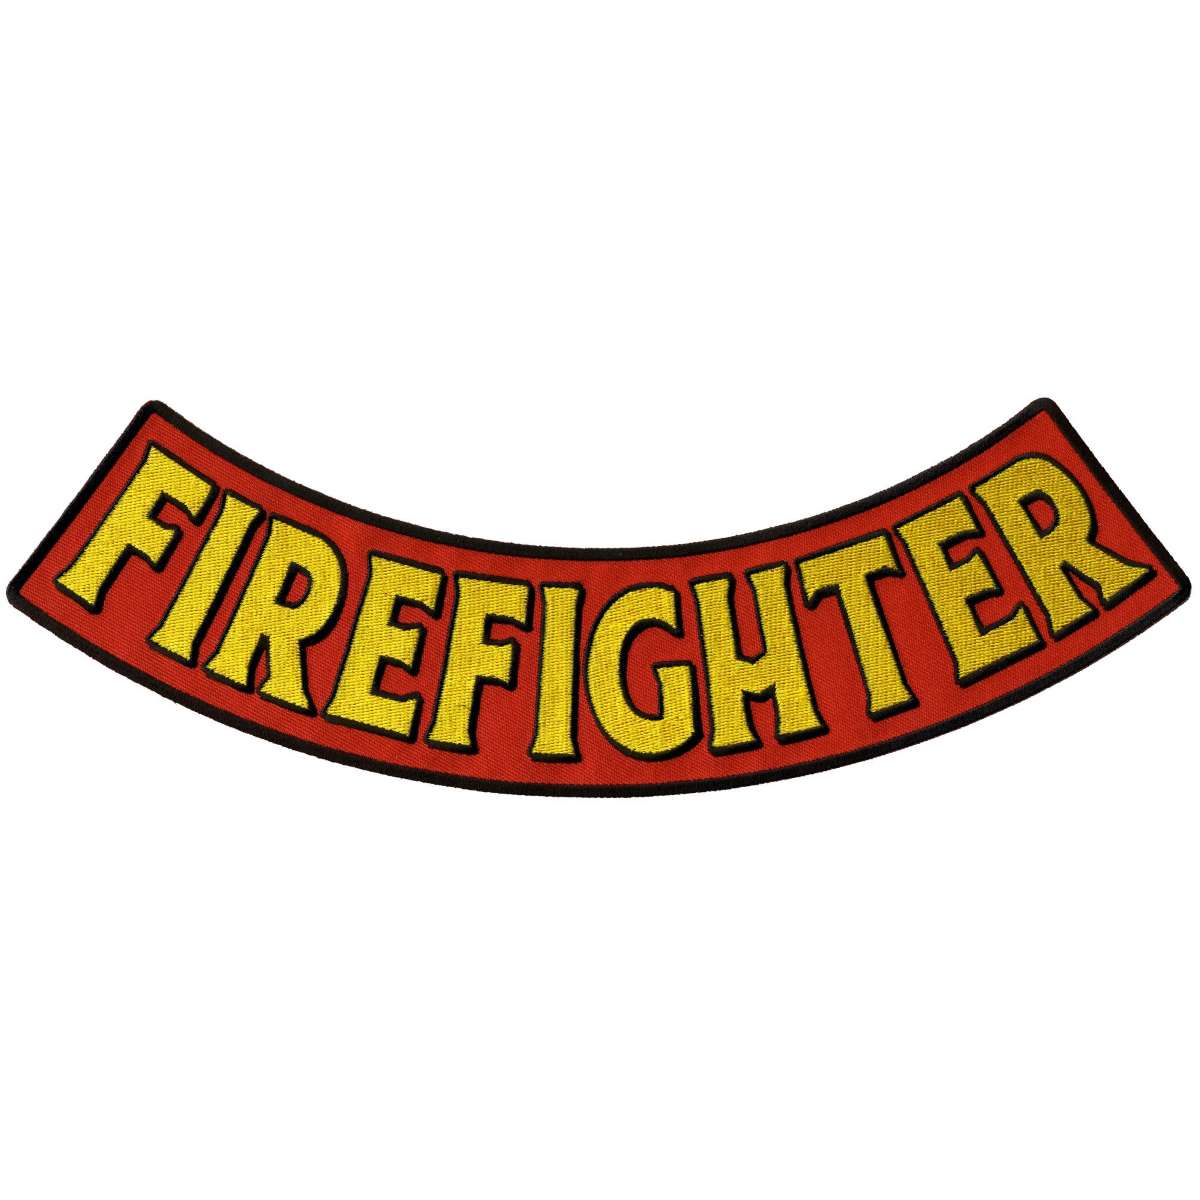 Hot Leathers Firefighter 12” X 3” Bottom Rocker Patch PPM5131